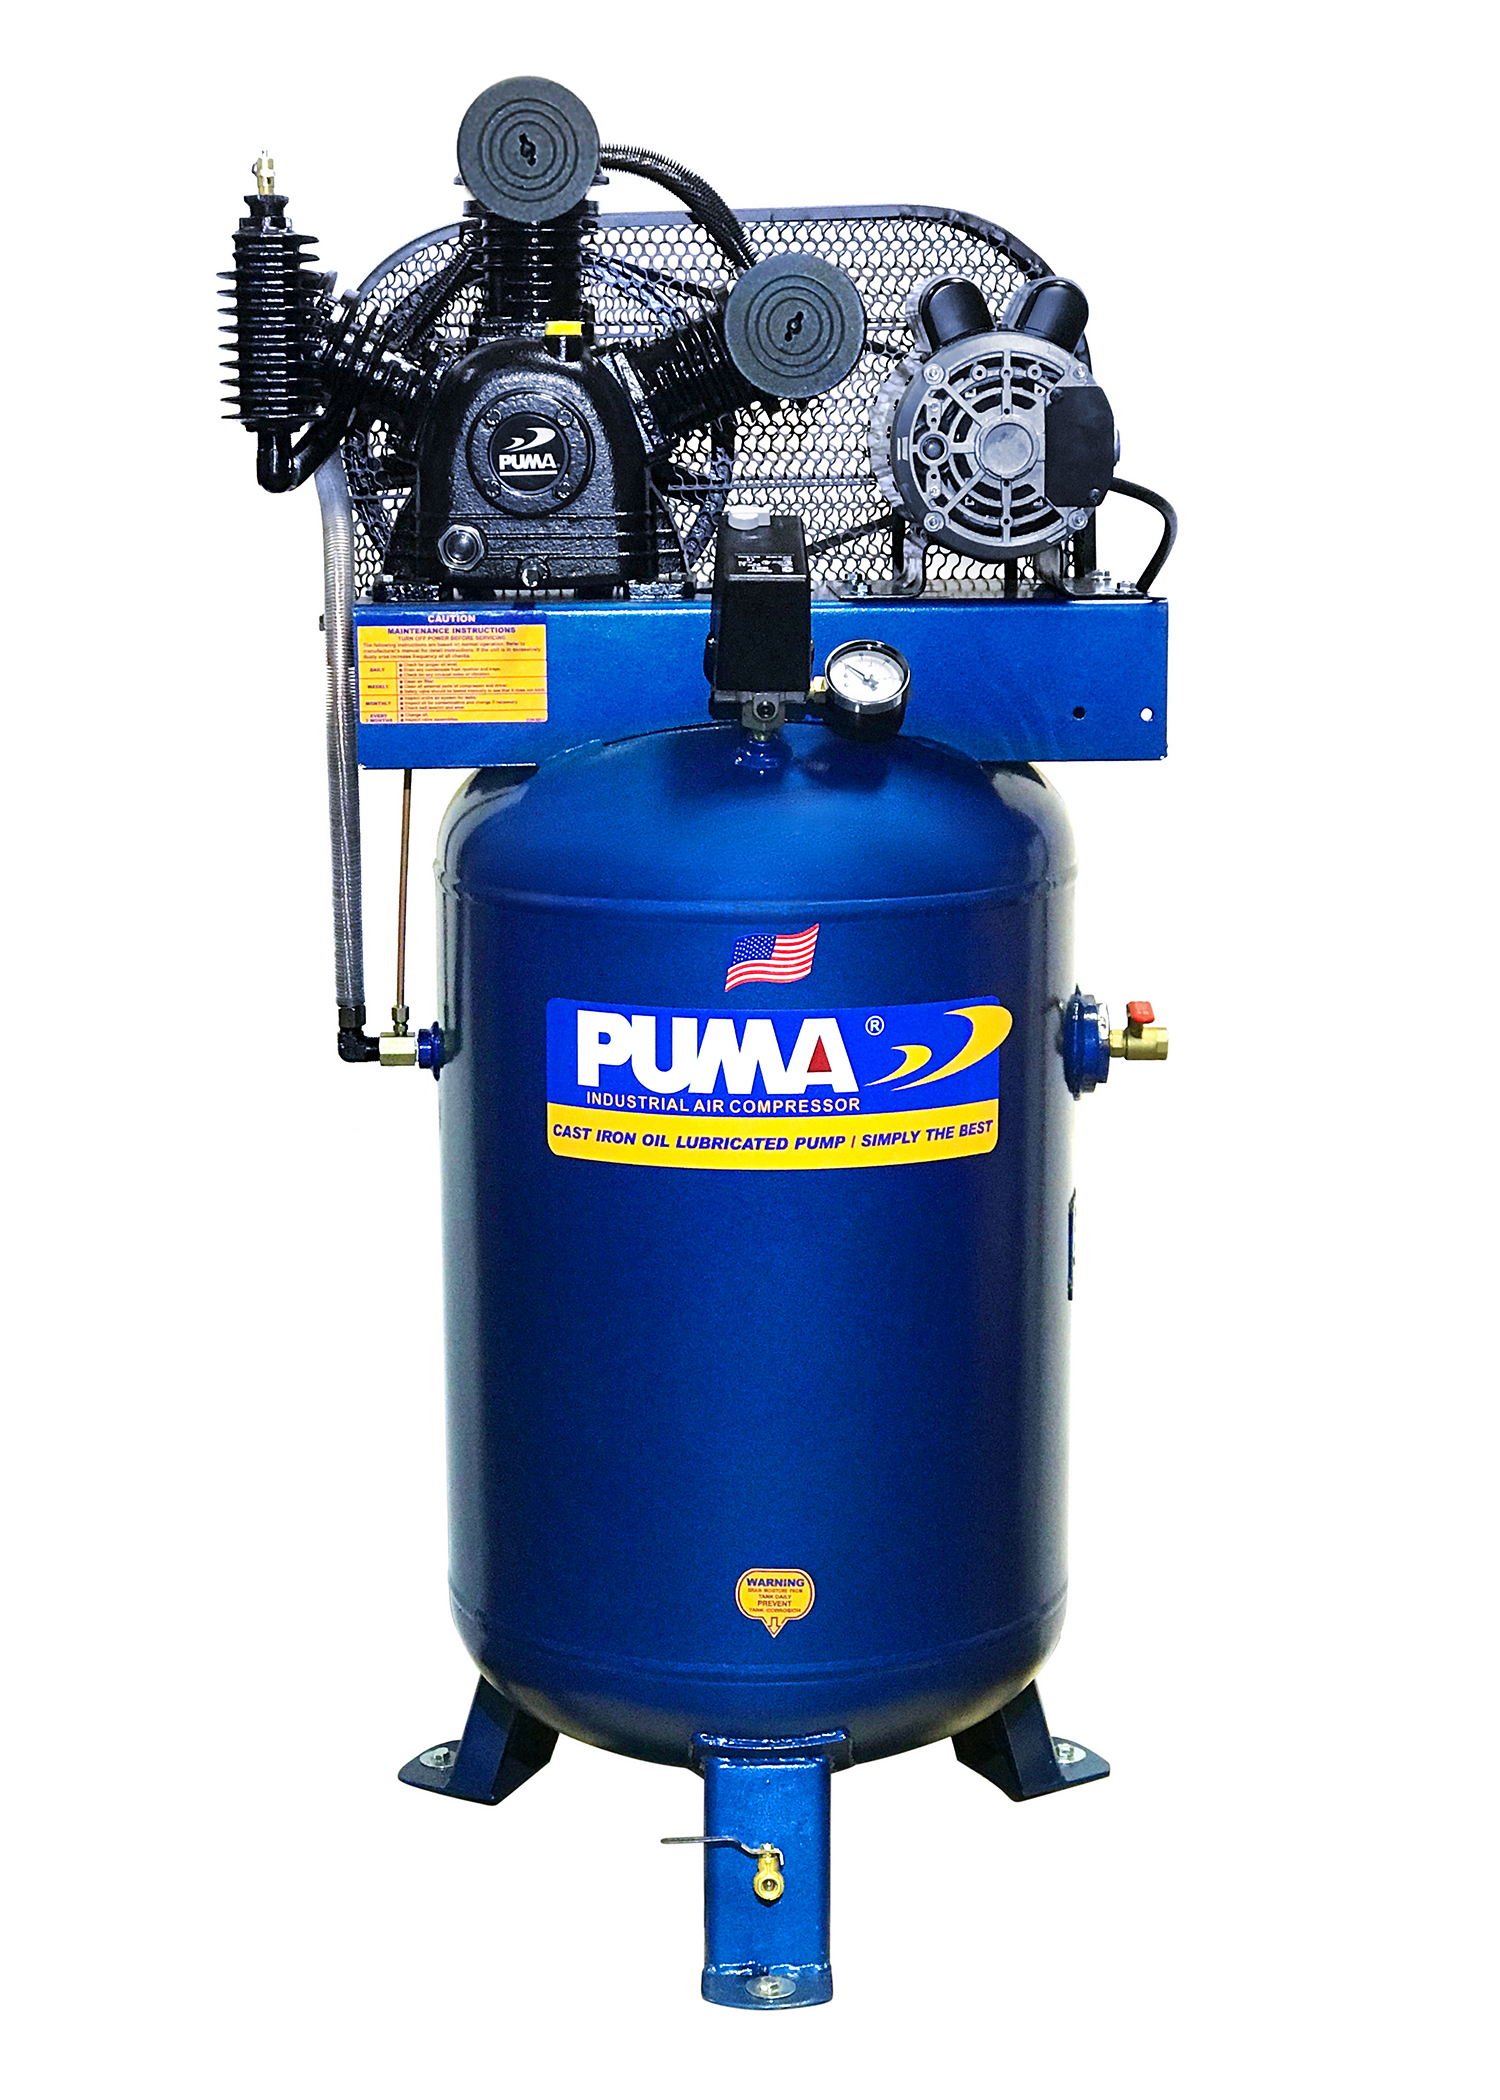 puma air compressor thailand